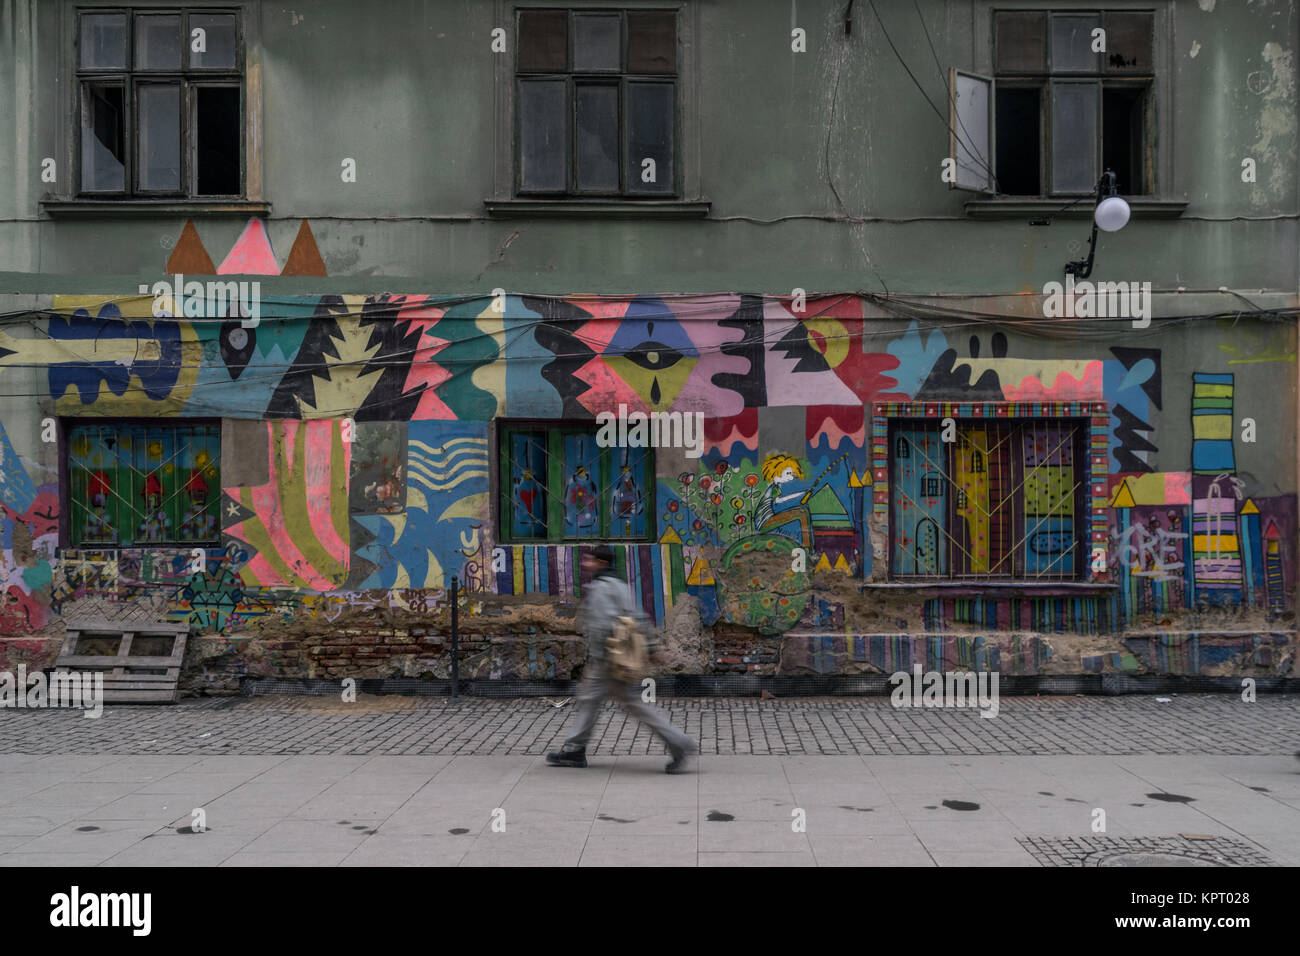 TIMISOARA, Rumänien - Dezember 17, 2015: Ein unbekannter Mann Spaziergänge durch ein verlassenes Haus, das über eine Straße Kunst aus dem Buch Der kleine Prinz. Stockfoto